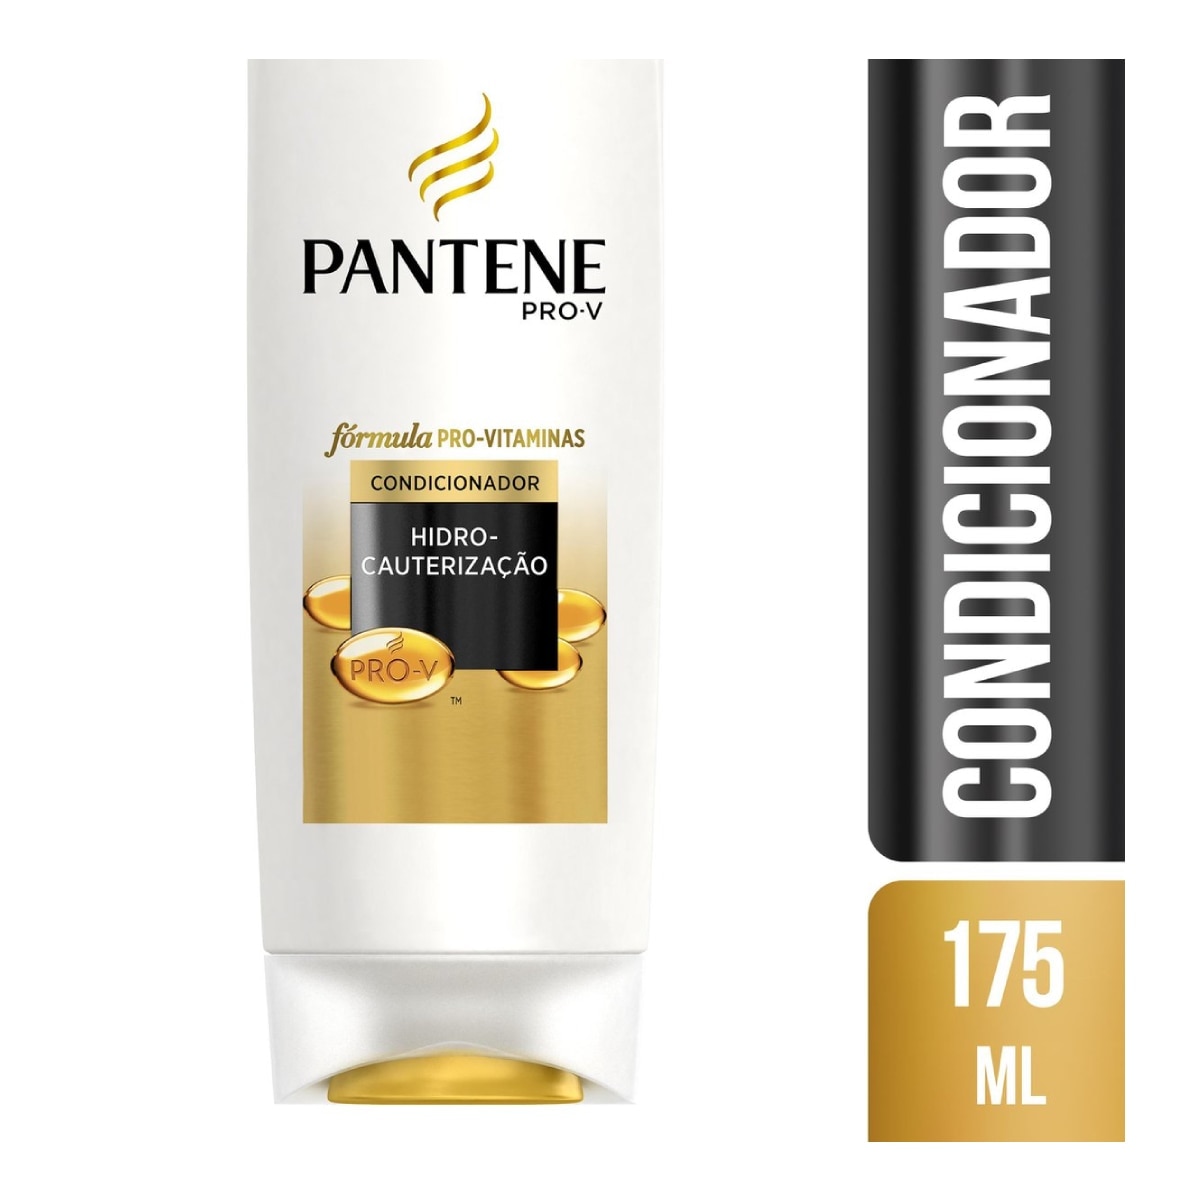 Condicionador Pantene Hidro-cauterizacao 175ml